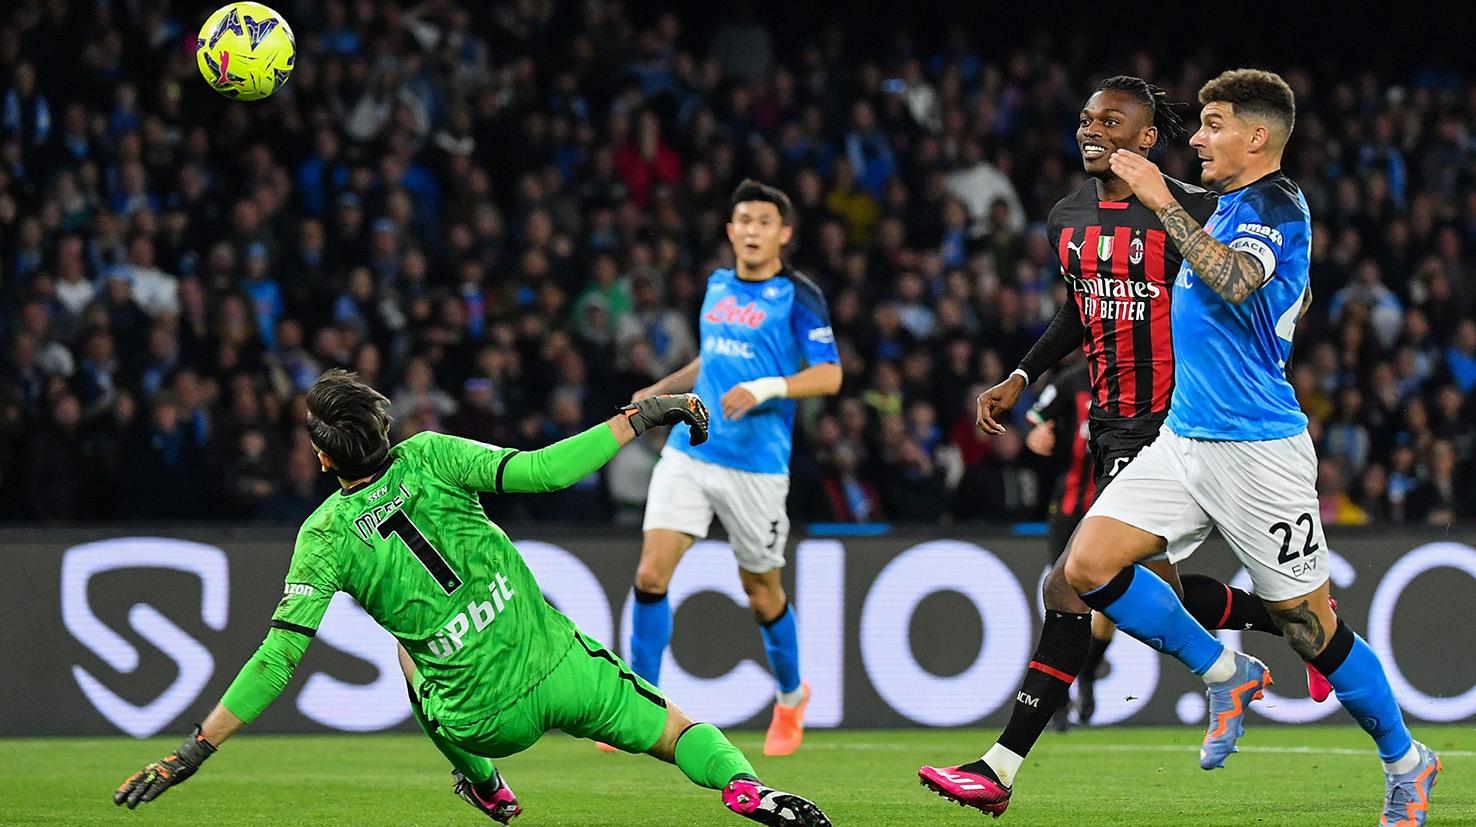 Napoli – AC Milan 0-4